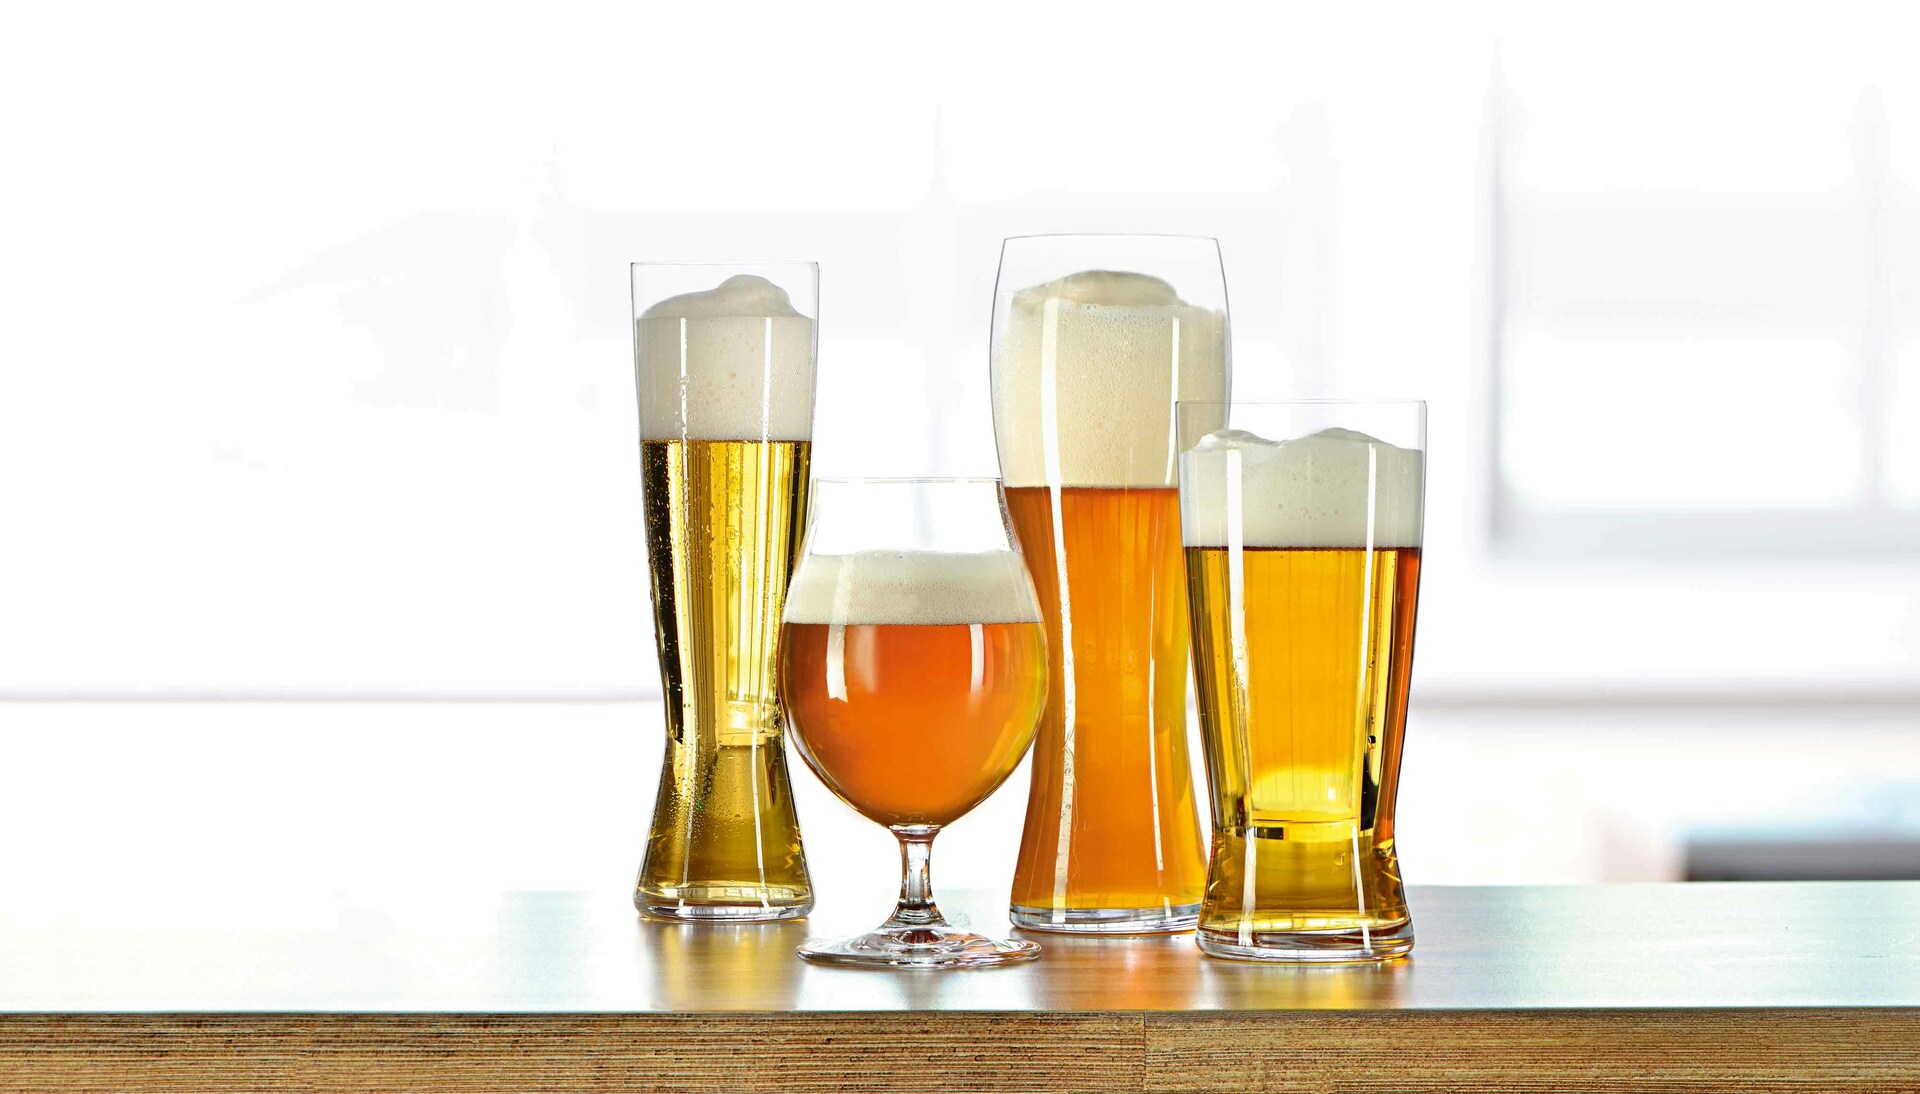 Spiegelau Craft Beer Tasting Kit + Reviews